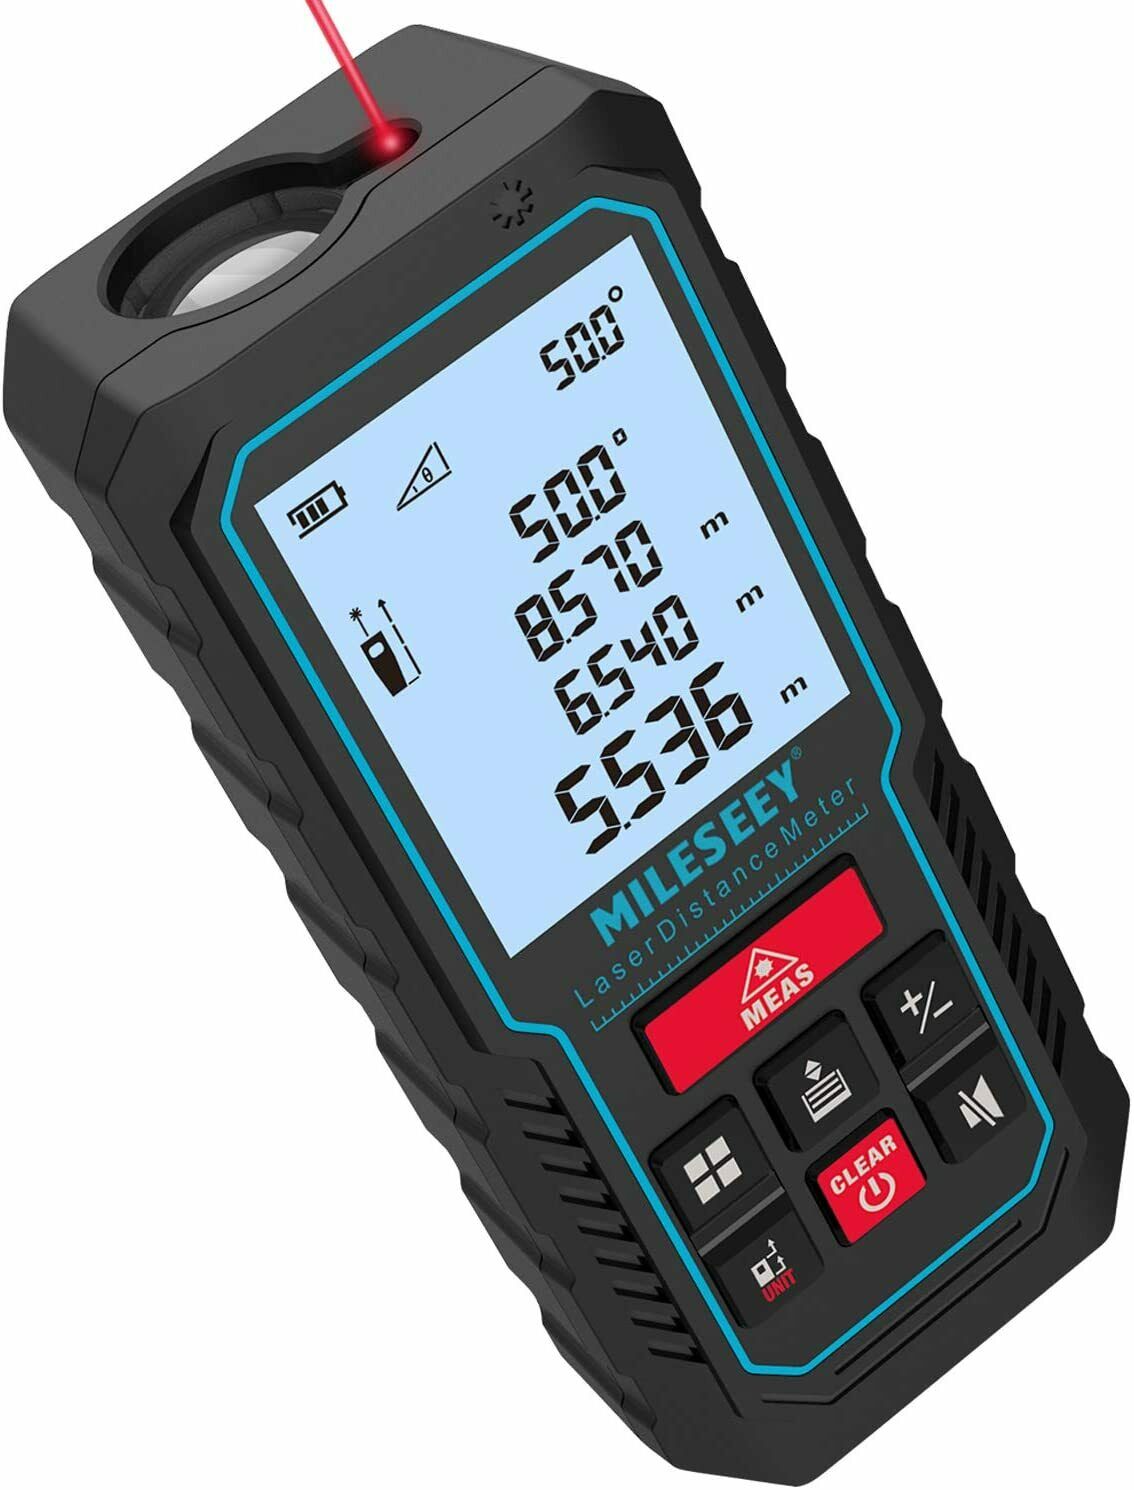 70m/229ft Handheld Digital Laser Point Distance Meter Measure Tape Range Finder